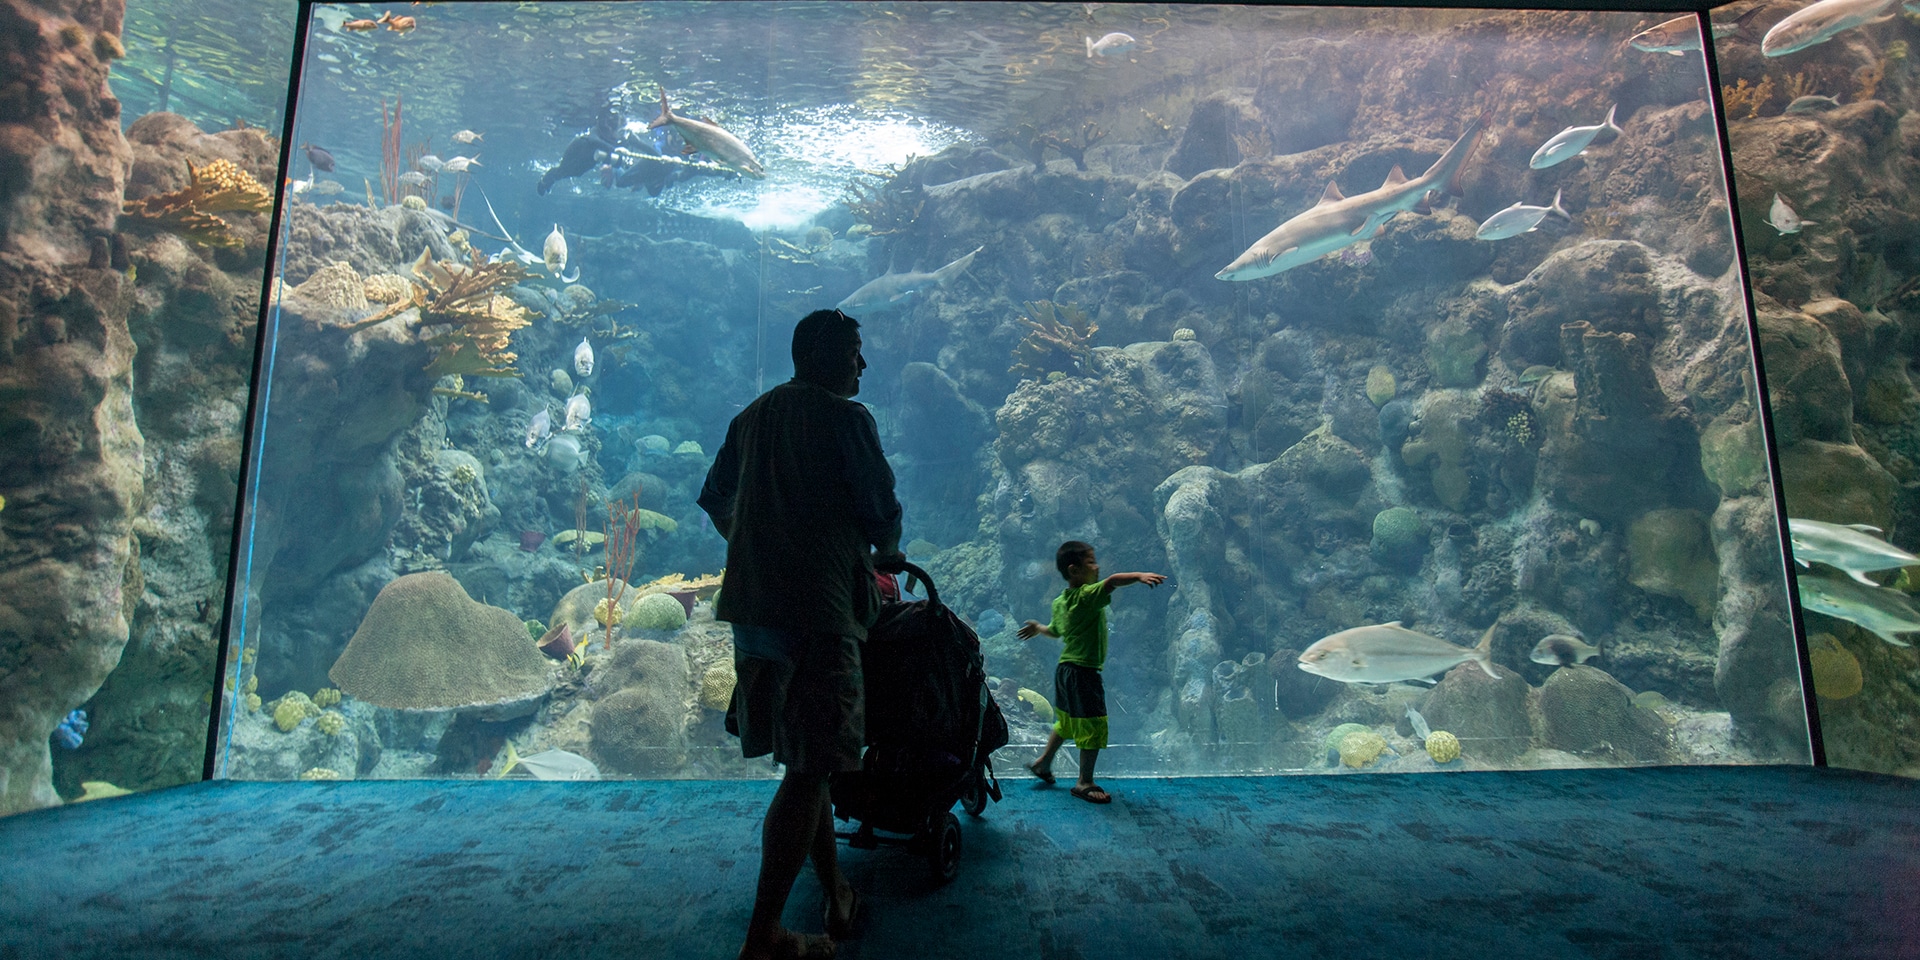 Tampa aquarium